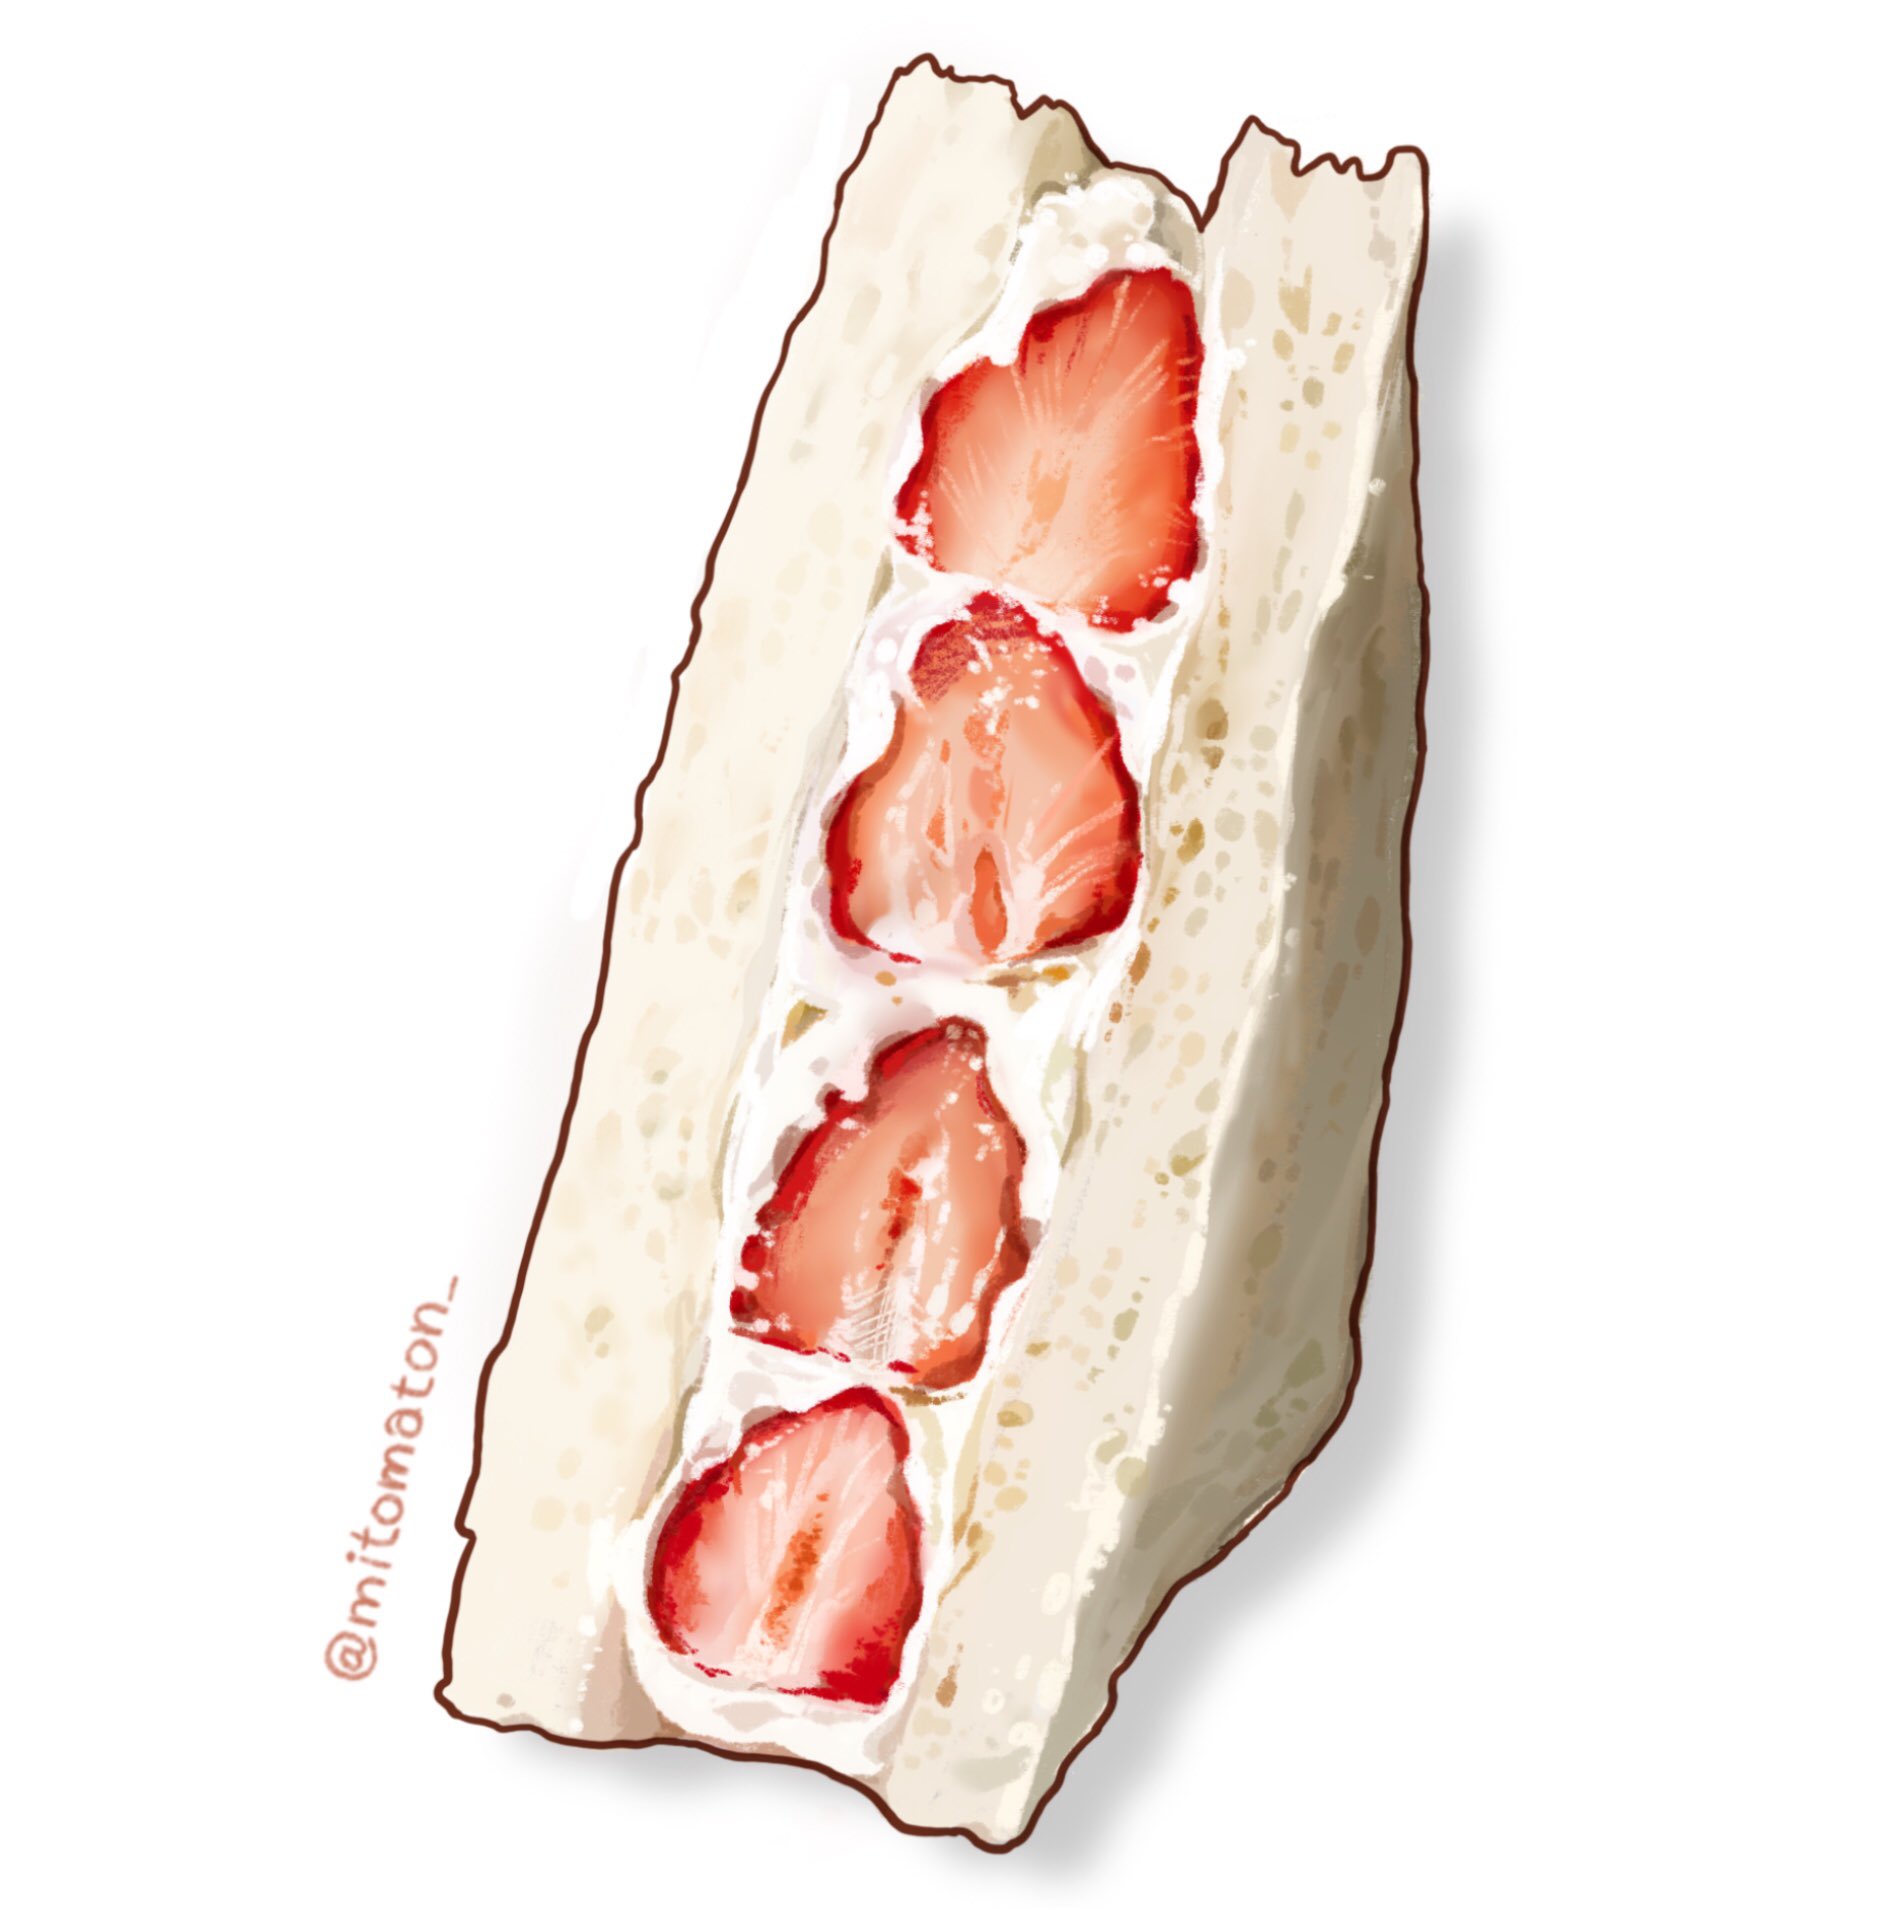 ミトマトン 苺のフルーツサンドを描きました 食べ物イラスト フルーツサンド Procreate Foodillustration T Co W73nncnuci Twitter